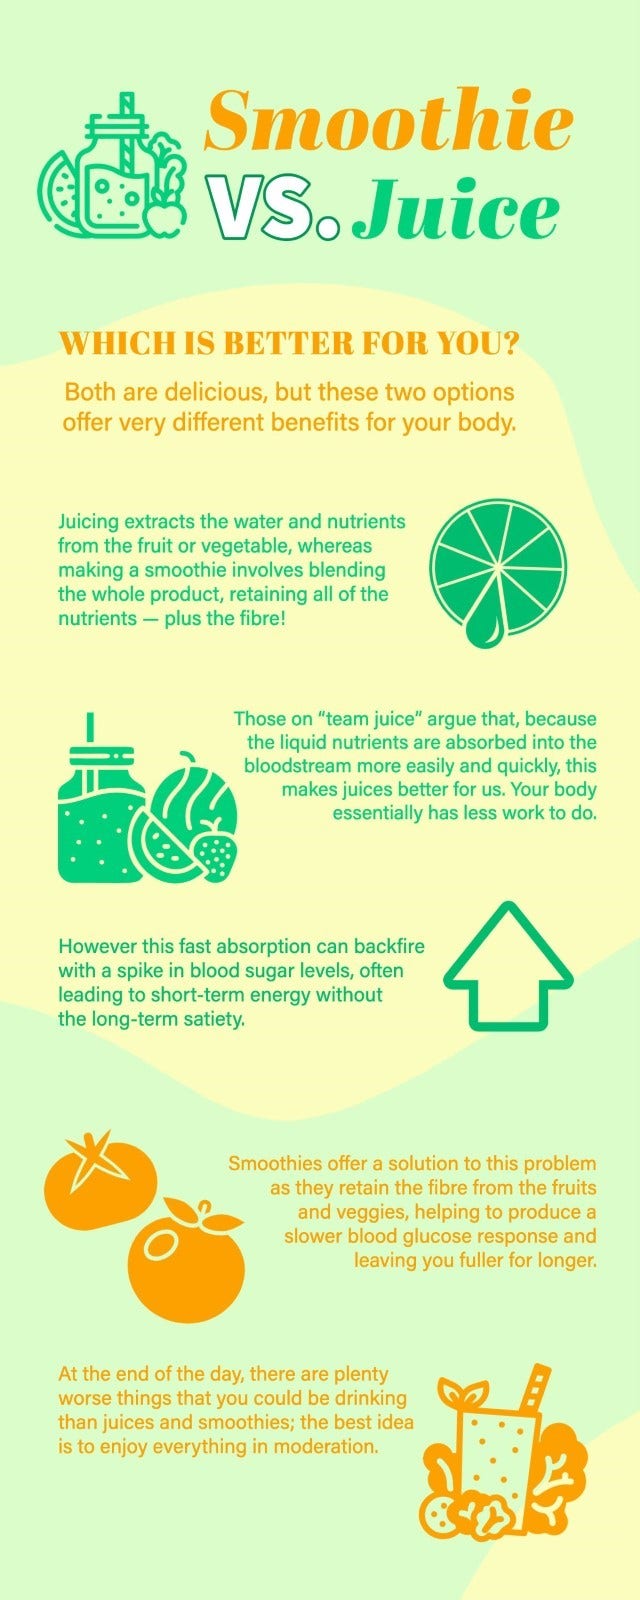 Green Yellow & Orange Smoothie vs. Juice Benefits Infographic